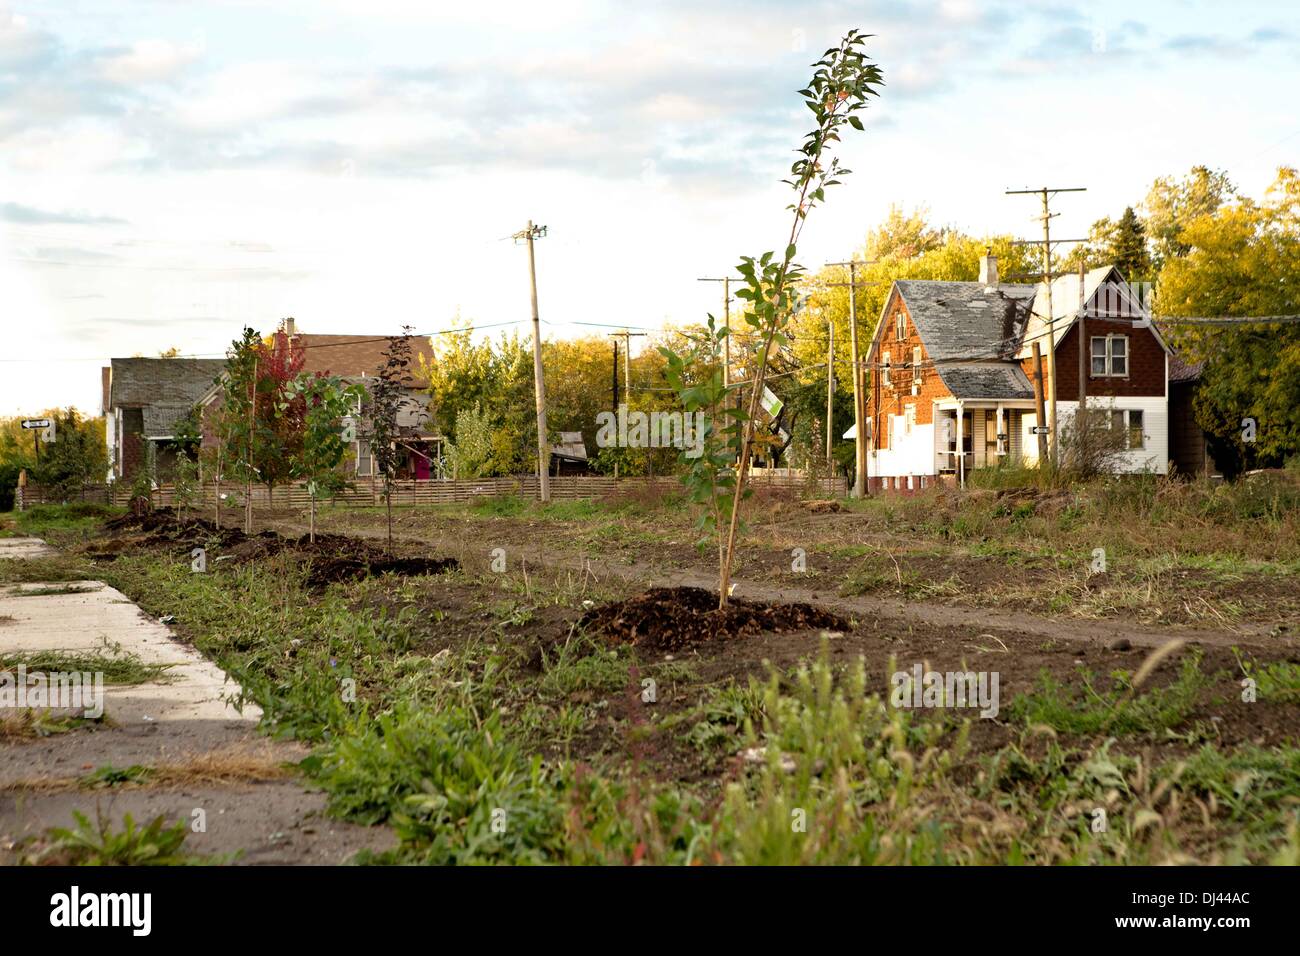 Die Farnsworth Gemeinschaftsgarten: eine langjährige urbane Landwirtschaft Anstrengung in Detroit. Bild wurde im Oktober 2013 aufgenommen. Stockfoto